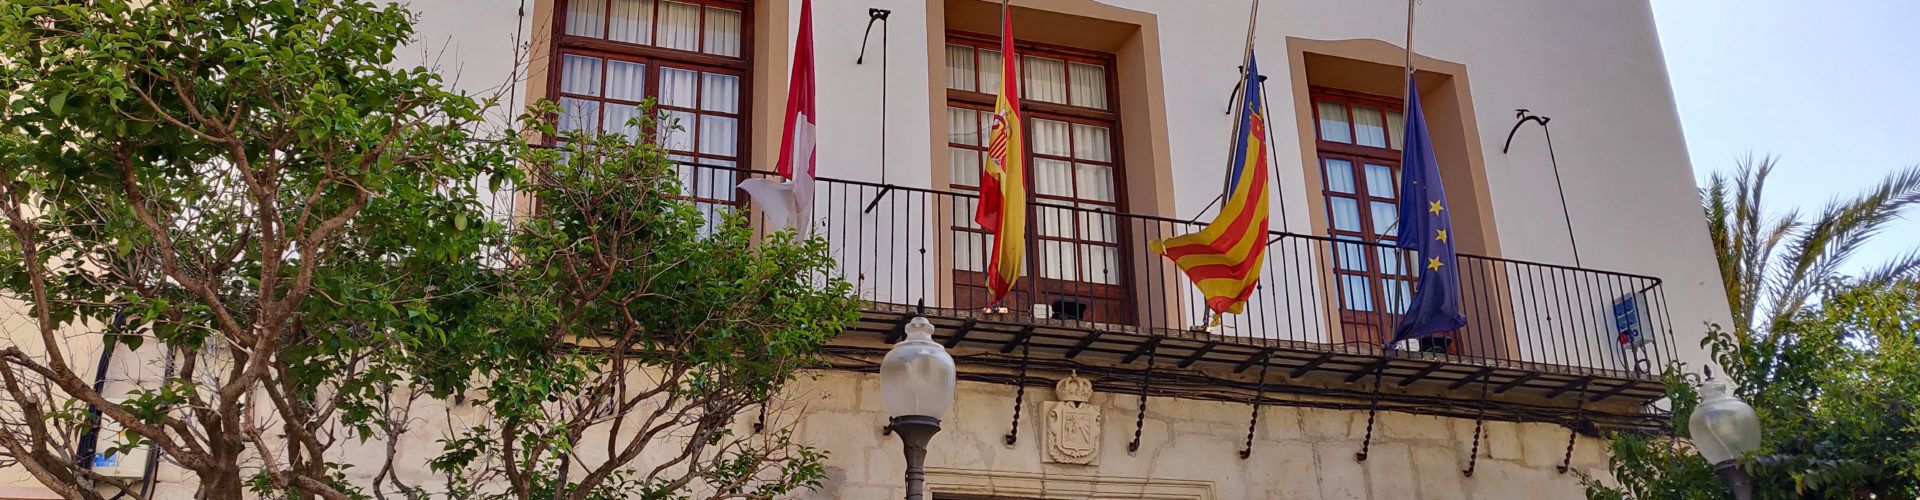 L’Ajuntament de Vinaròs aprova una declaració institucional per mostrar el seu rebuig a l’homofòbia